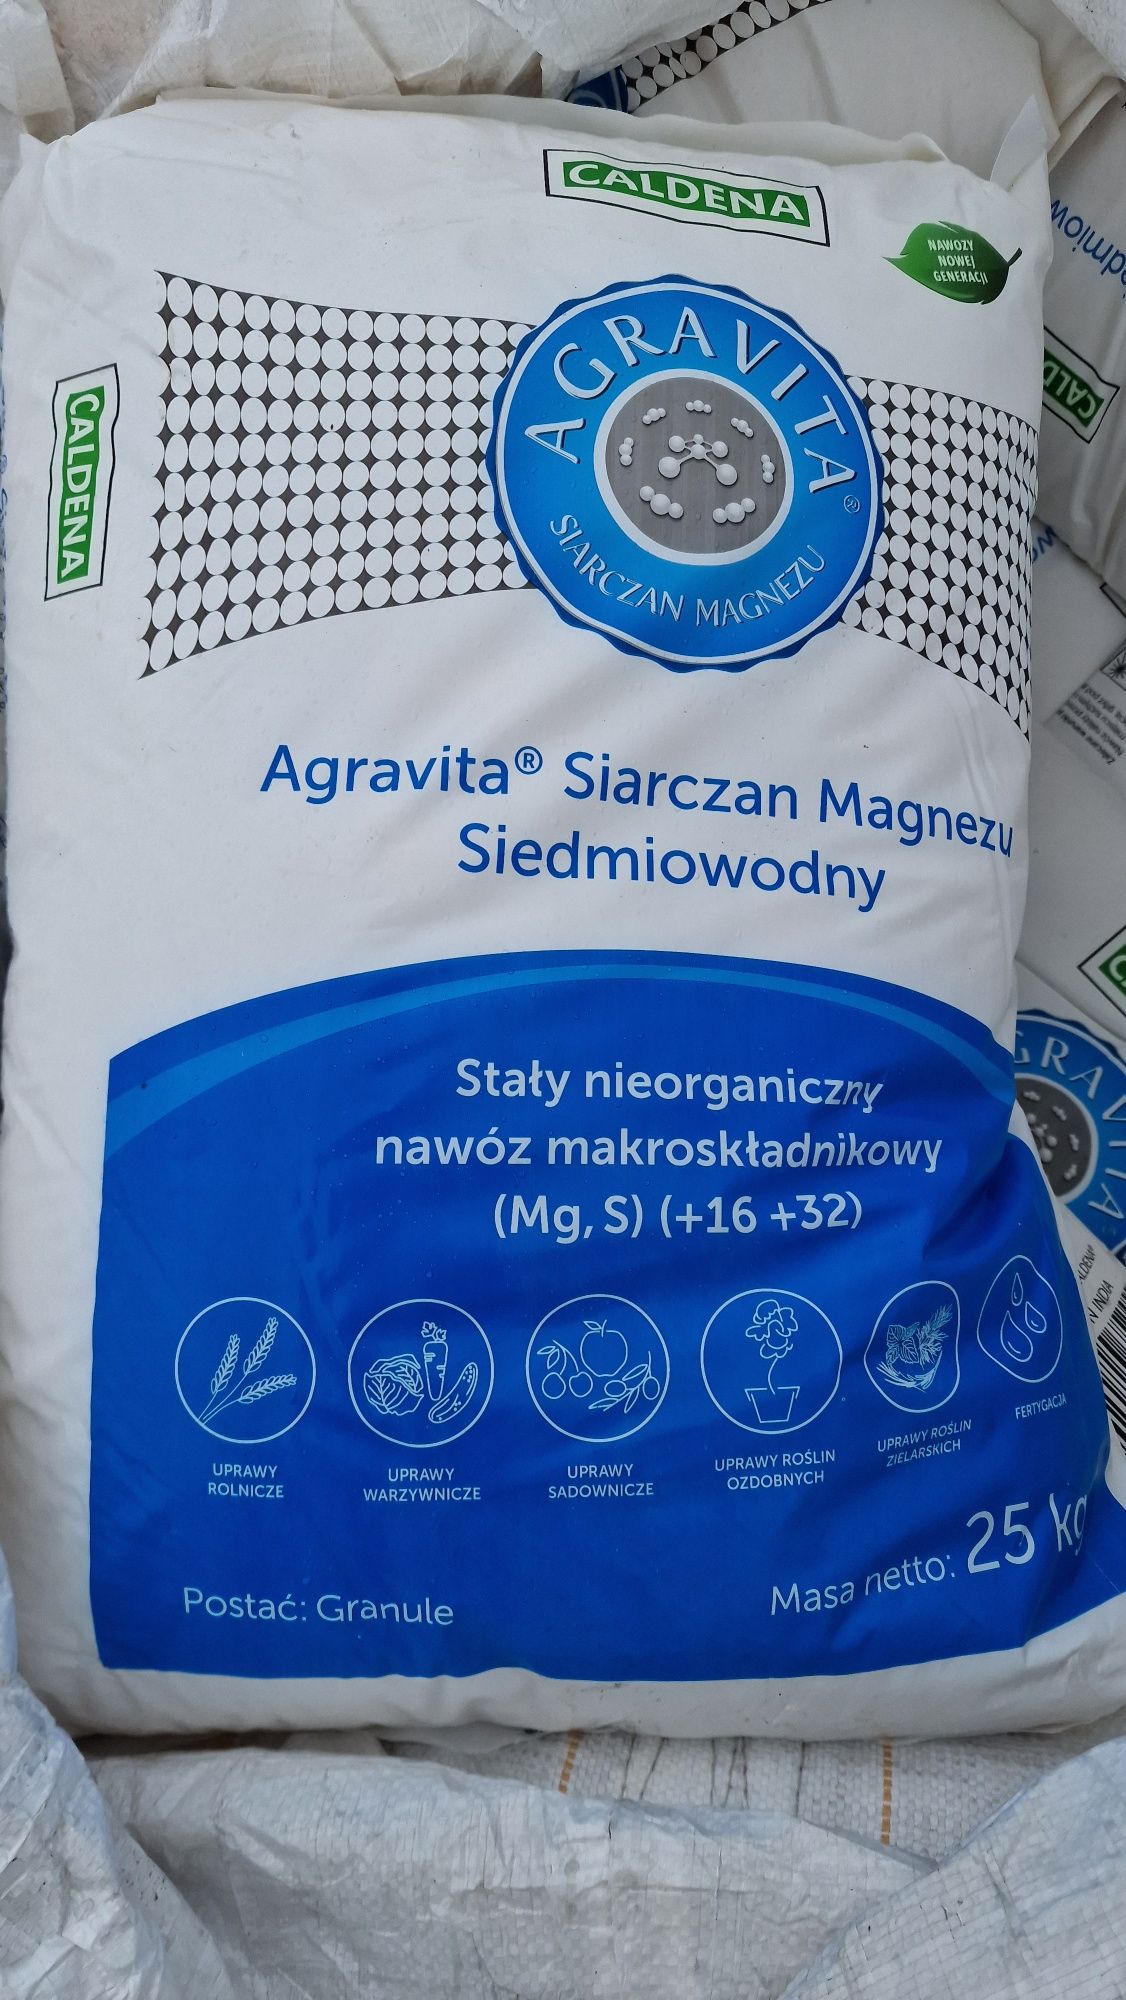 Siarczan magnezu (Mg,S) siedmiowodny worek 25kg Agravita Złotniki